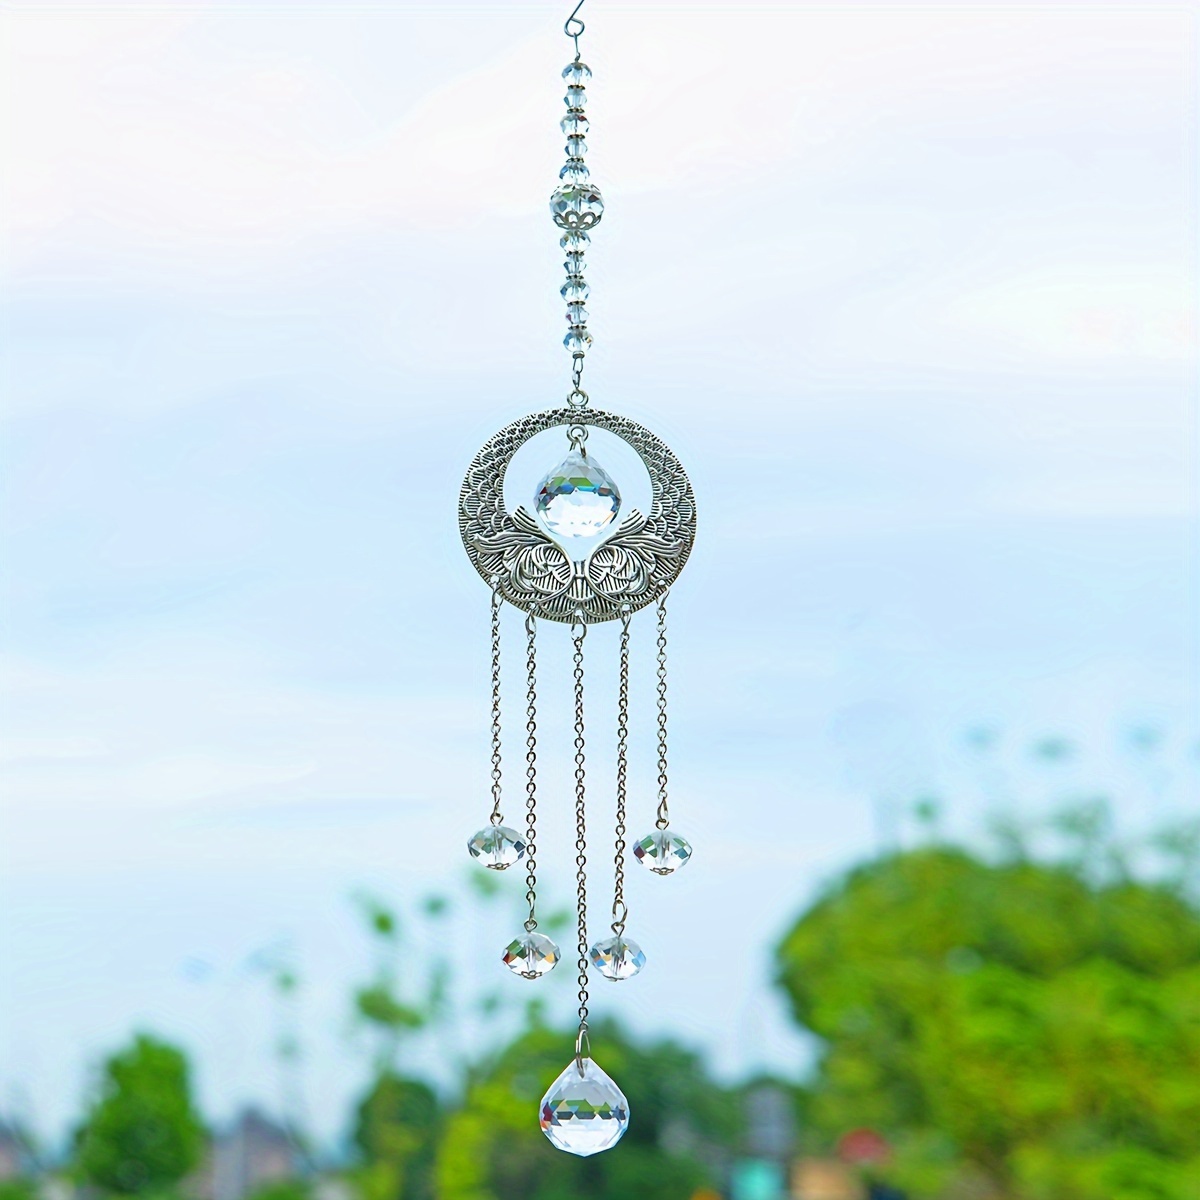 Cristal Attrape-soleil Soleil Et Lune Pendentif Maison Fentre Suspendus  Ornement Jardin Dcor Vent Carillon